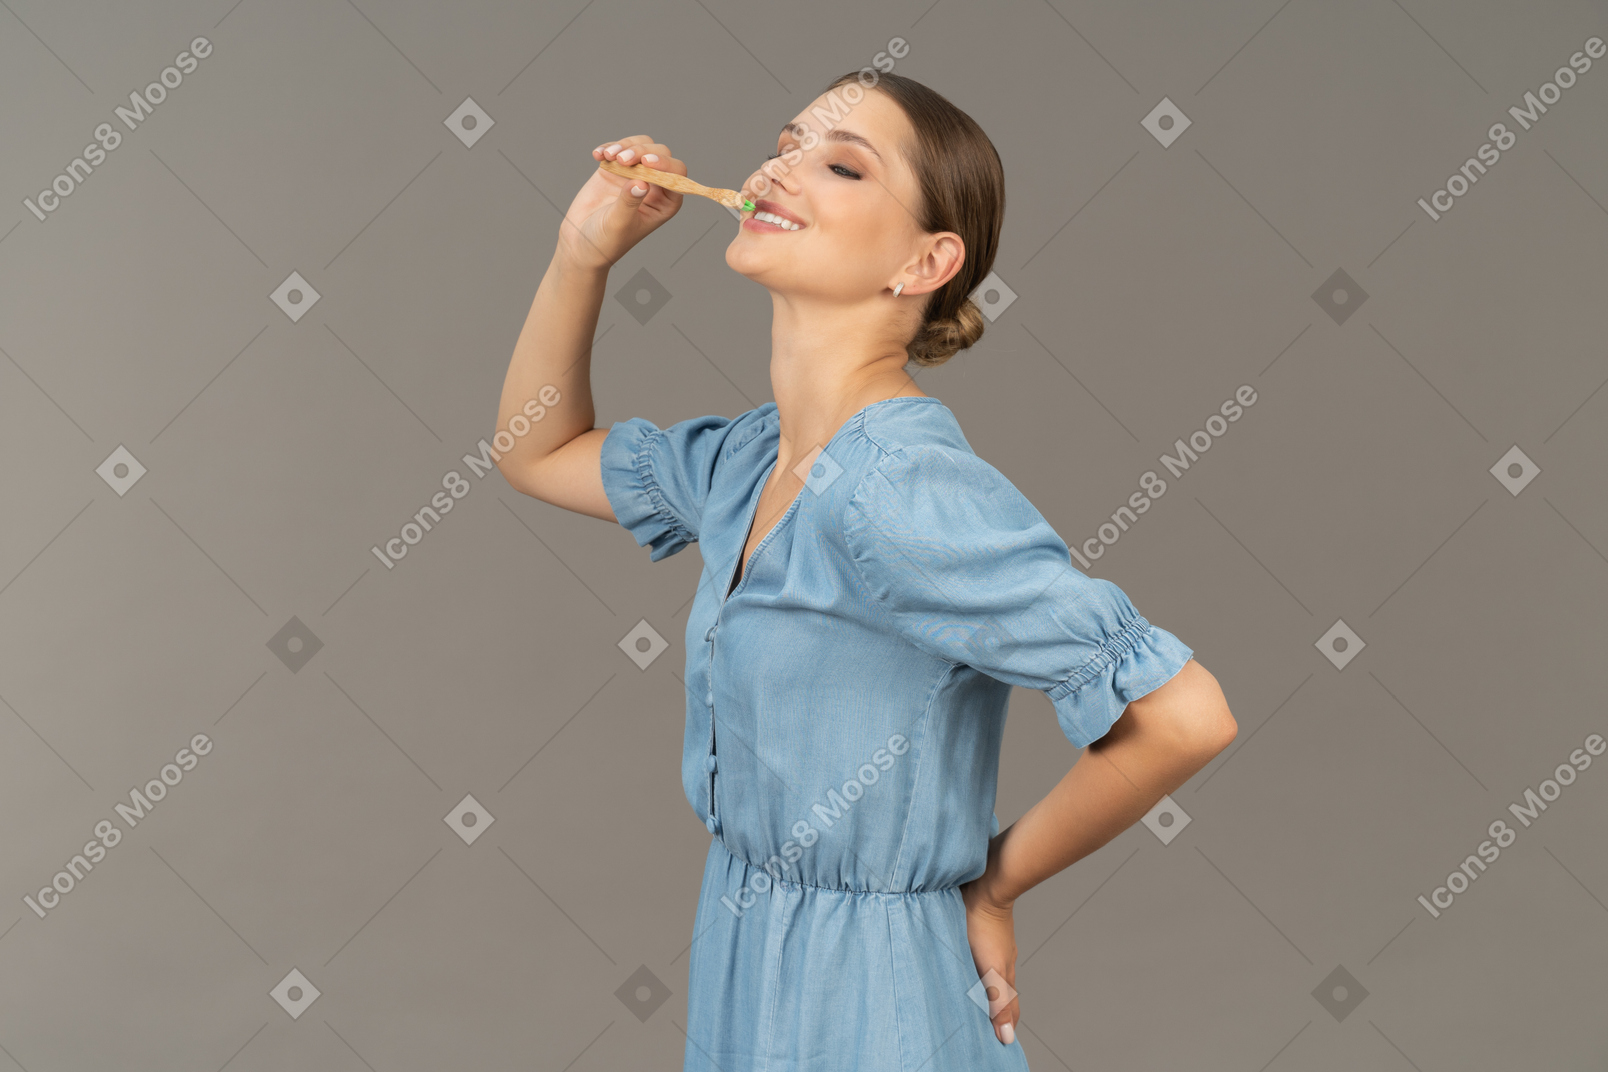 Vista de três quartos de uma jovem de vestido azul escovando os dentes